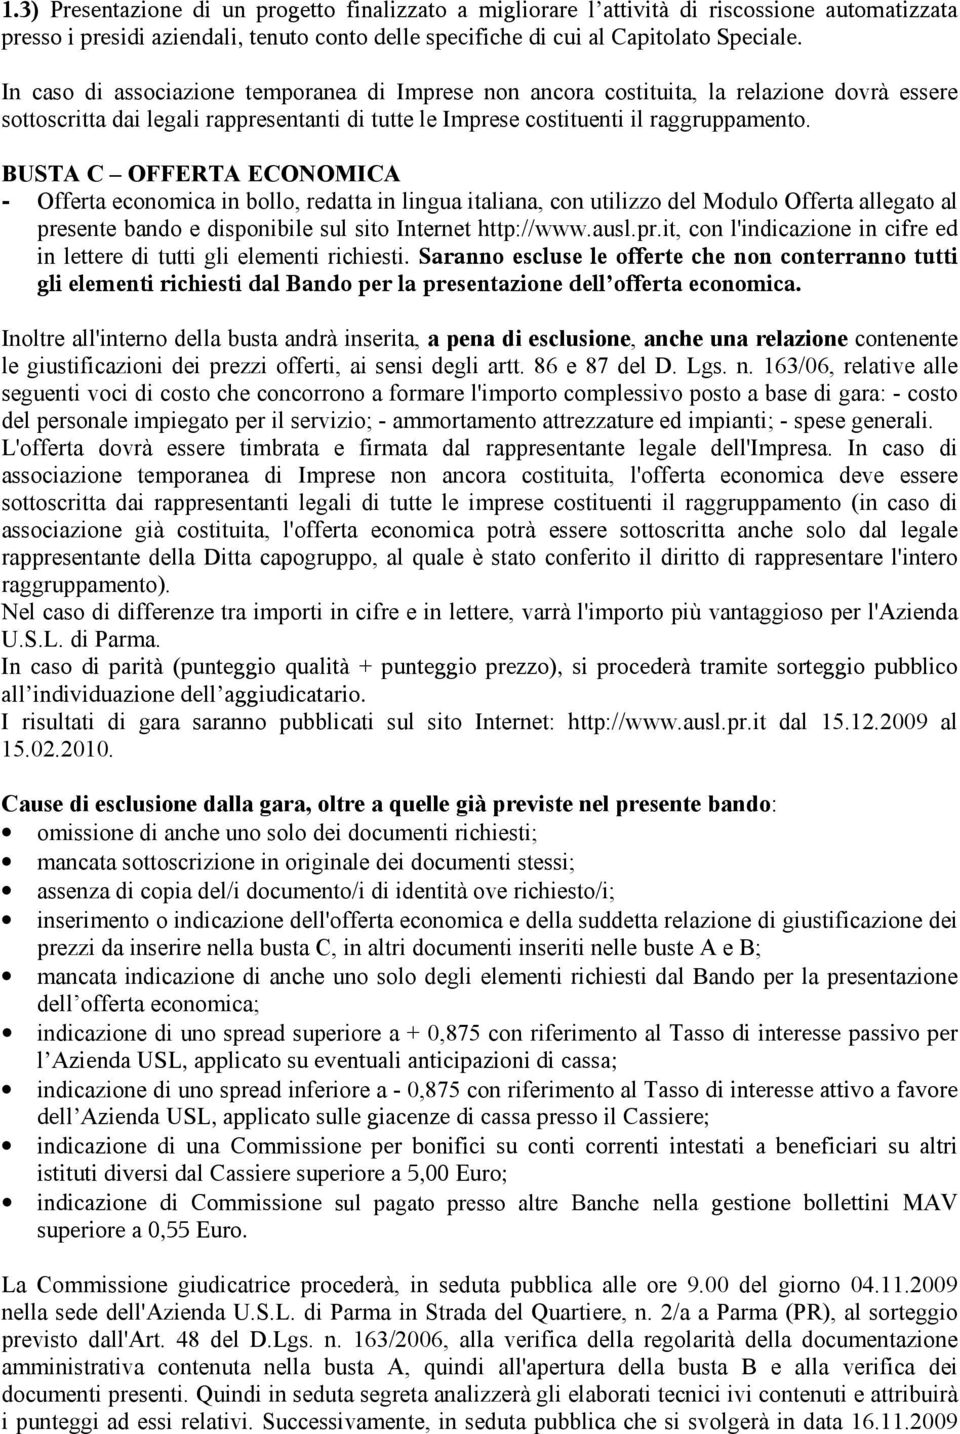 BUSTA C OFFERTA ECONOMICA - Offerta economica in bollo, redatta in lingua italiana, con utilizzo del Modulo Offerta allegato al pre